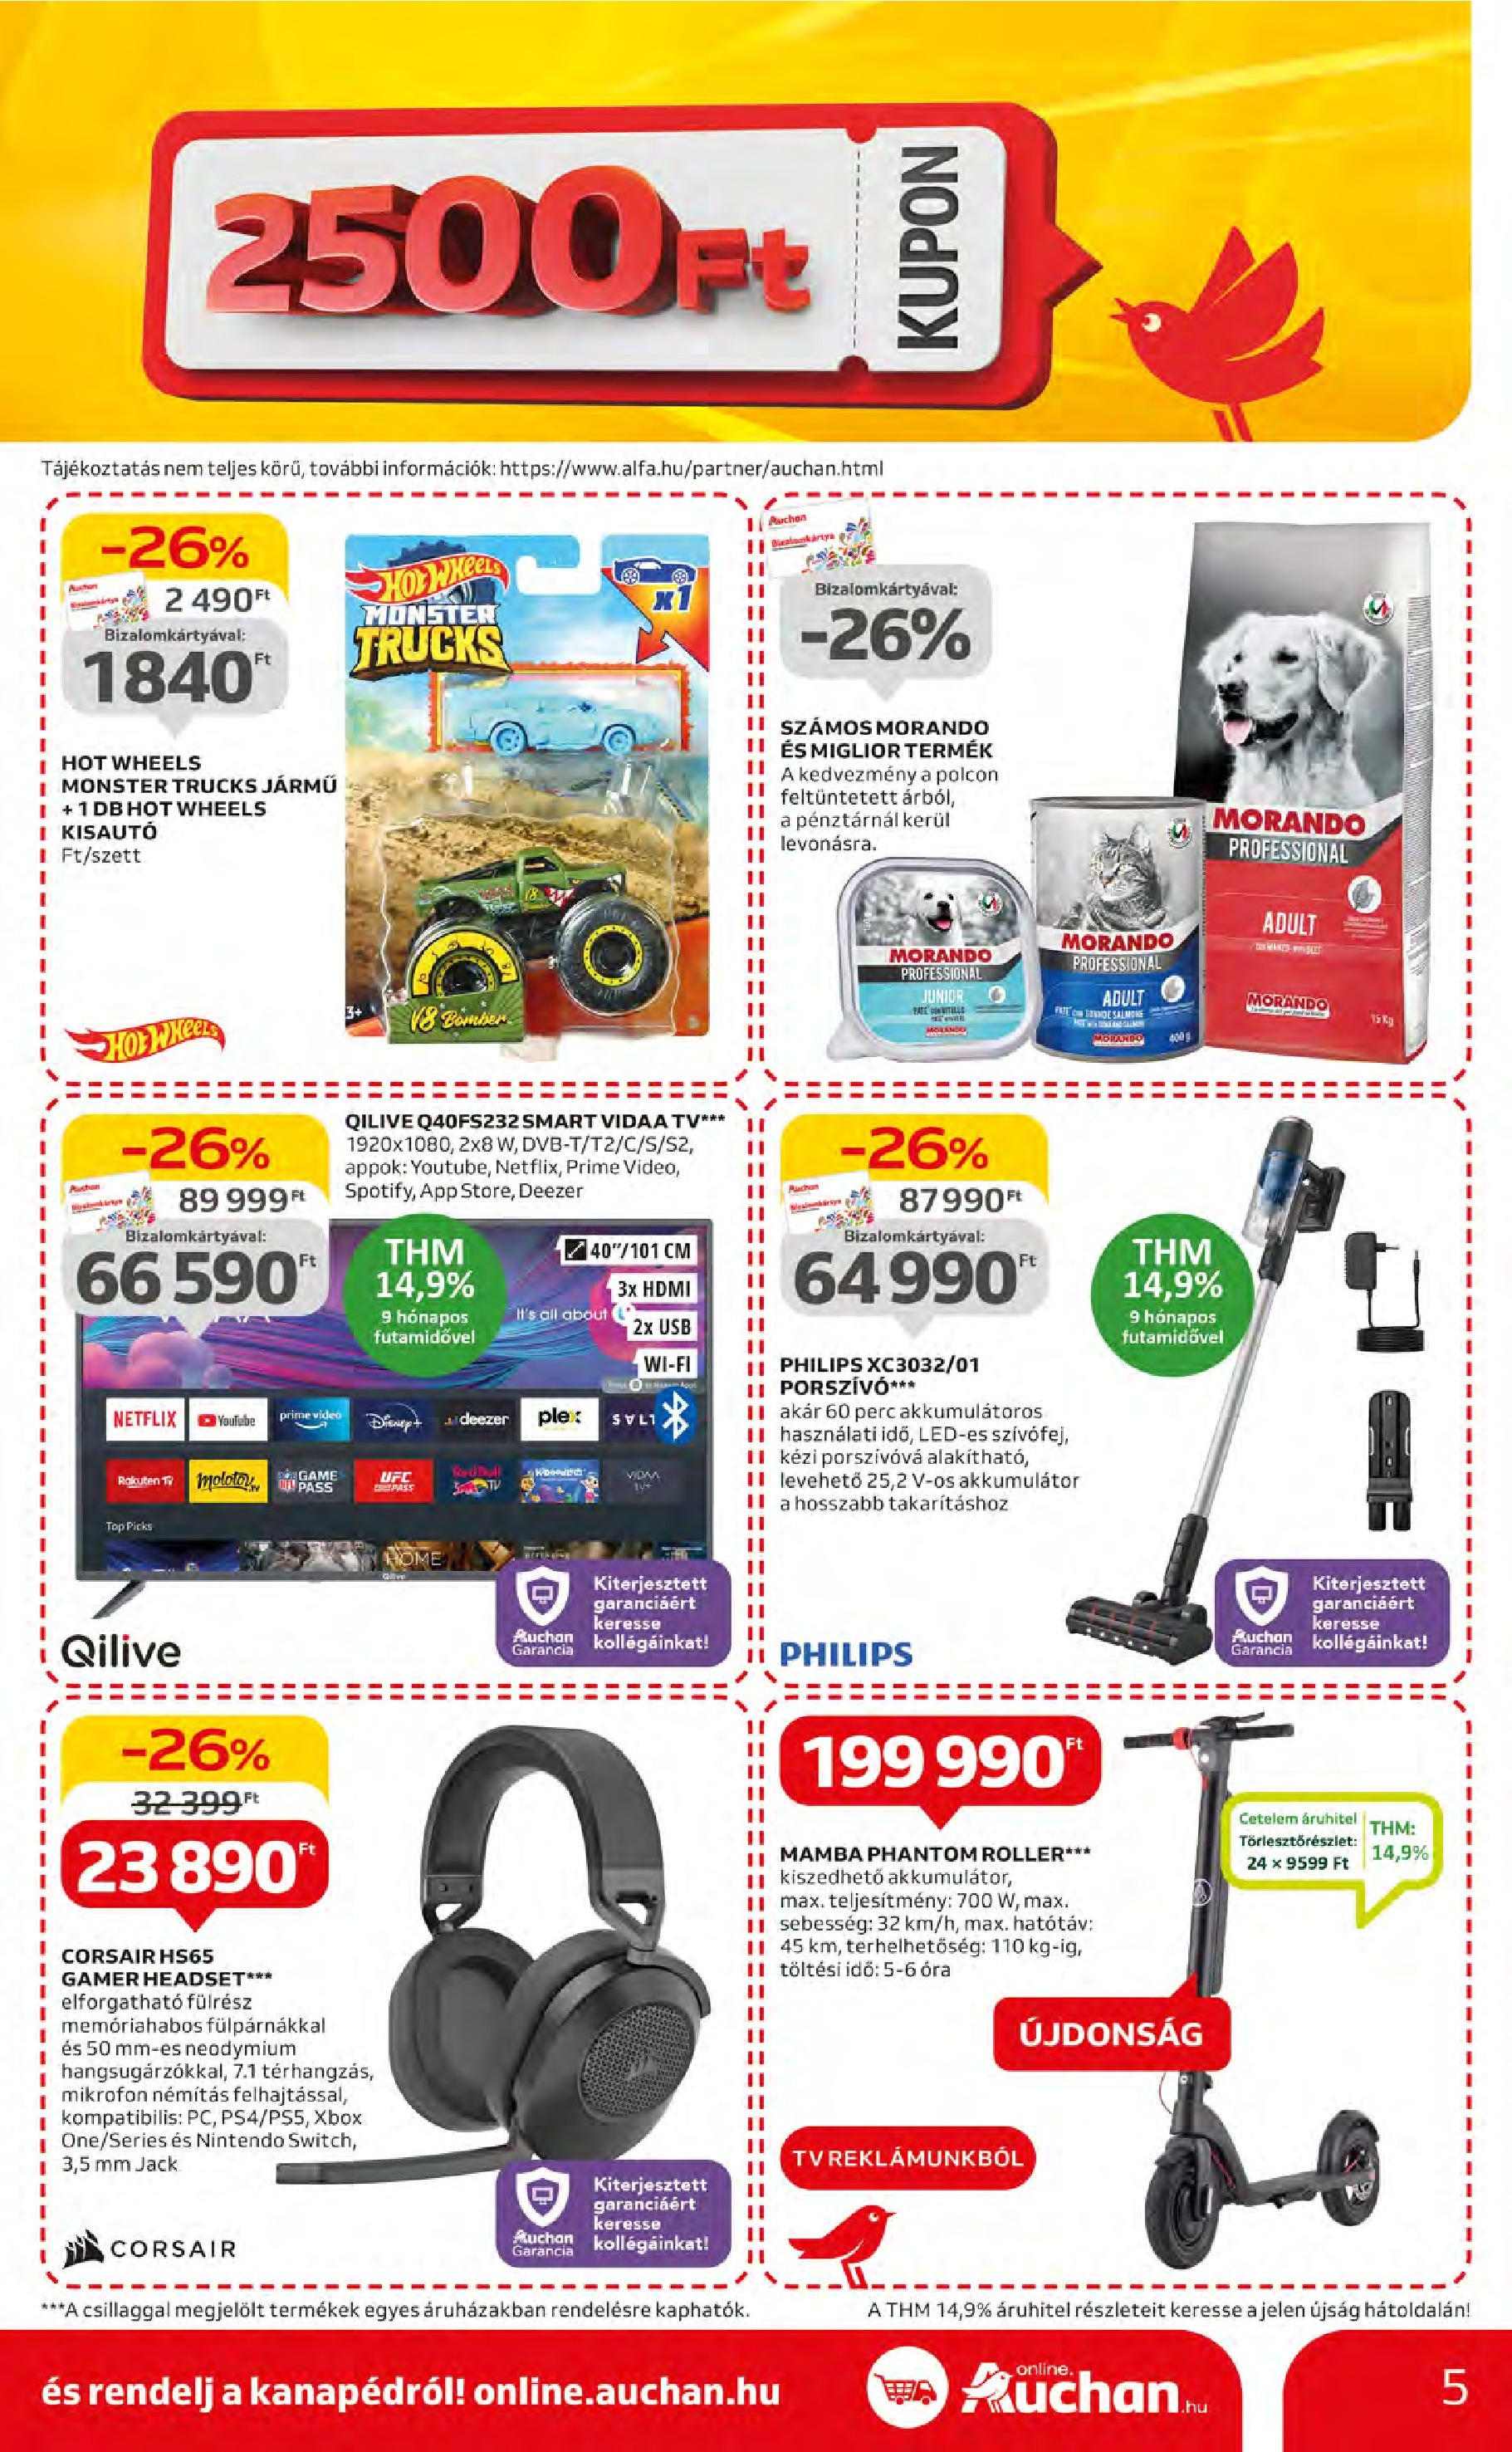 Auchan  Akciós újság - 2024.05.09. -tól/töl > akció, szórólap 🛍️ | Oldal: 5 | Termékek: Xbox, Roller, Headset, Akkumulátor